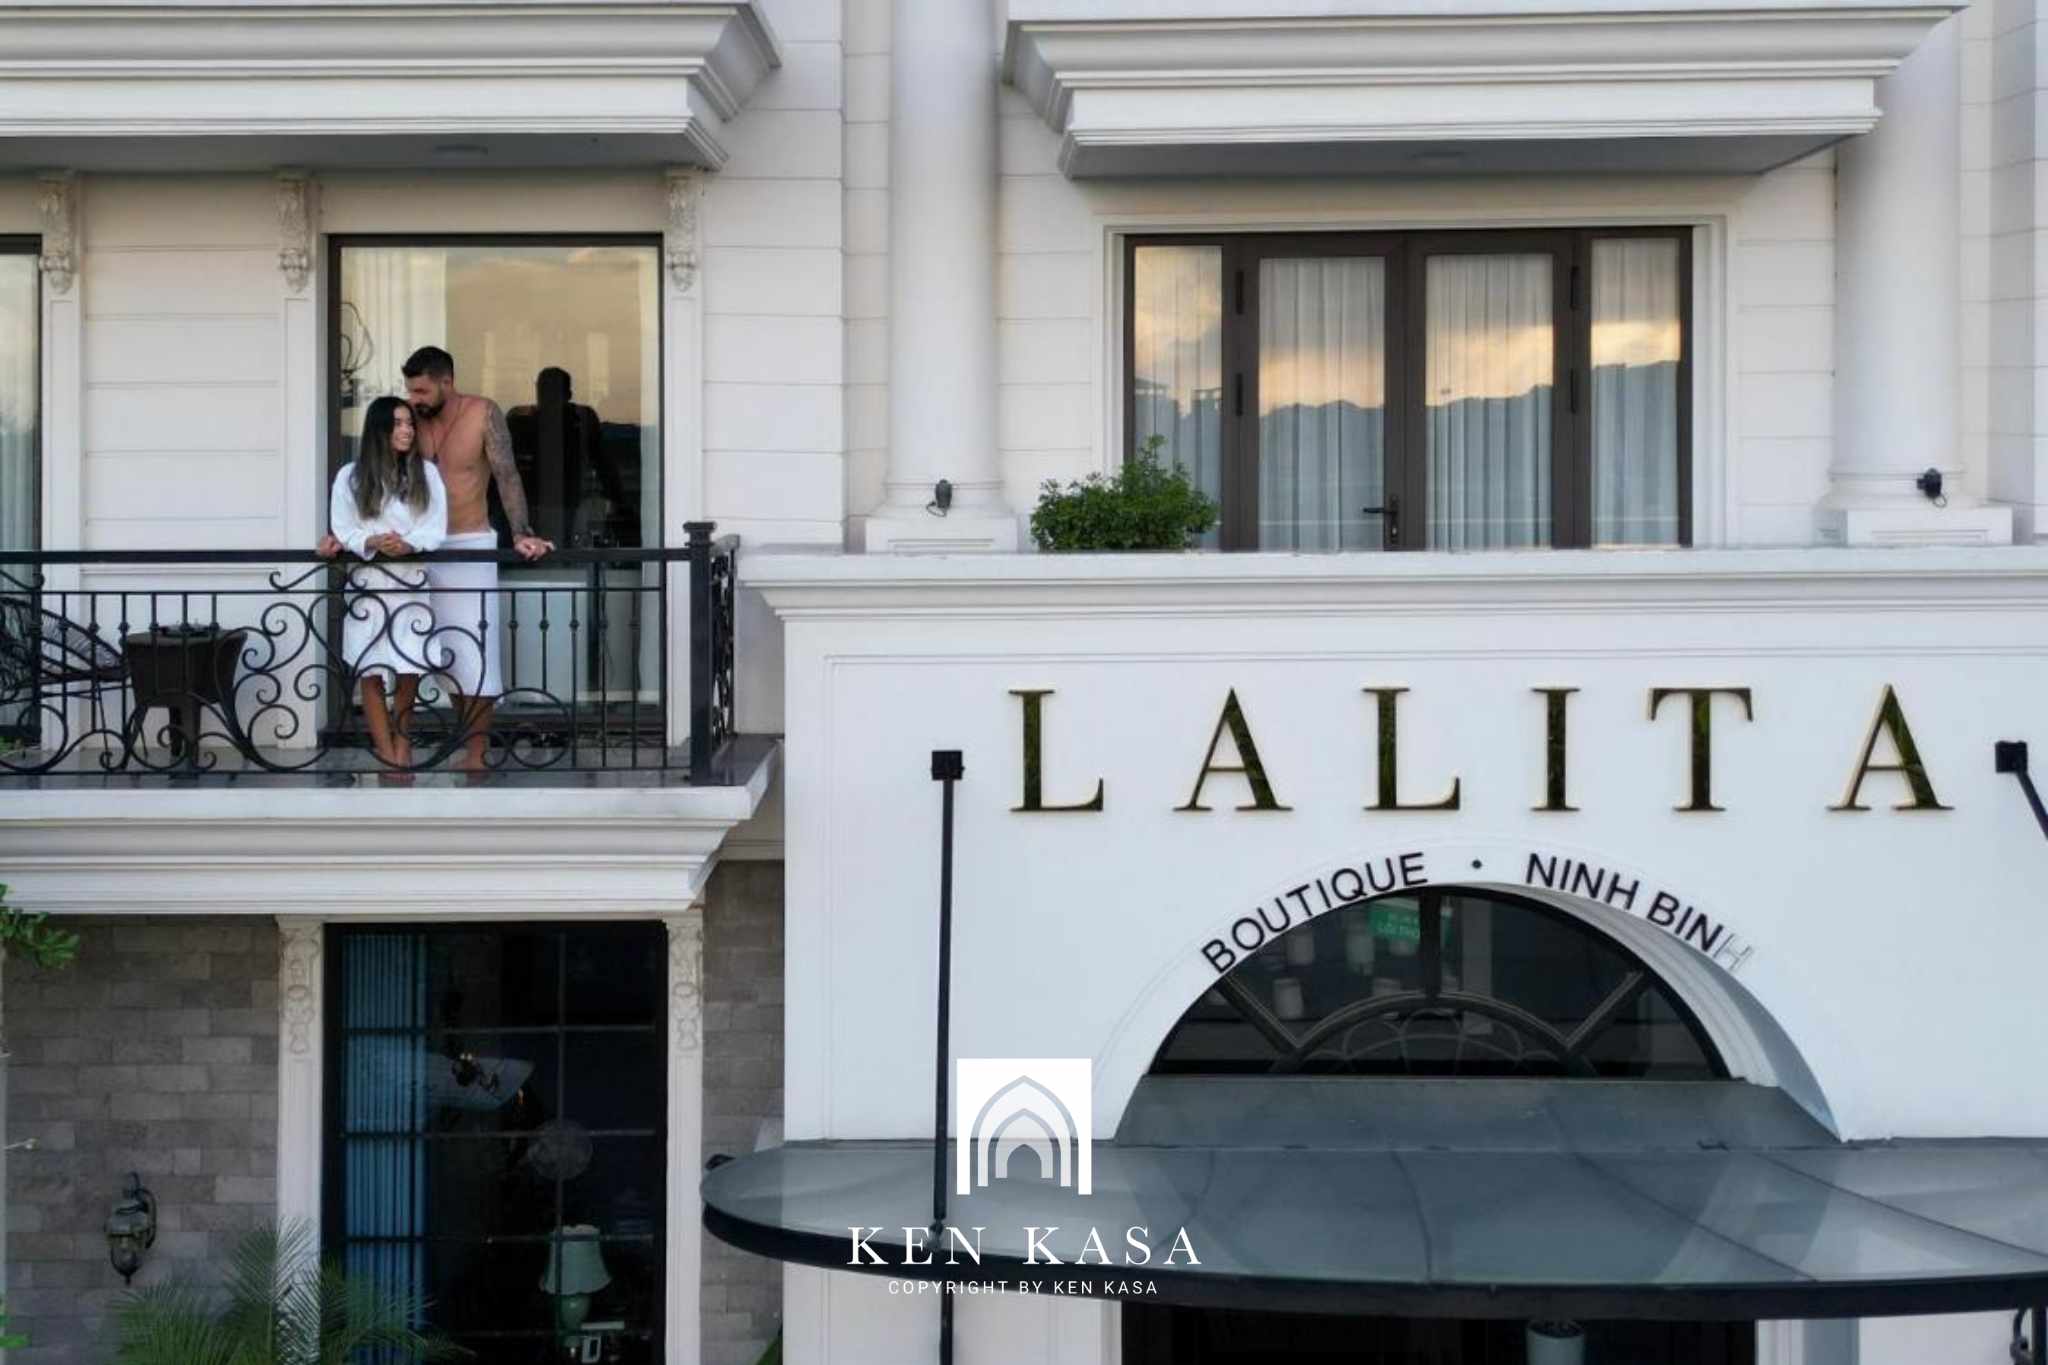 Thiết kế đặc biệt của Lalita Hotel